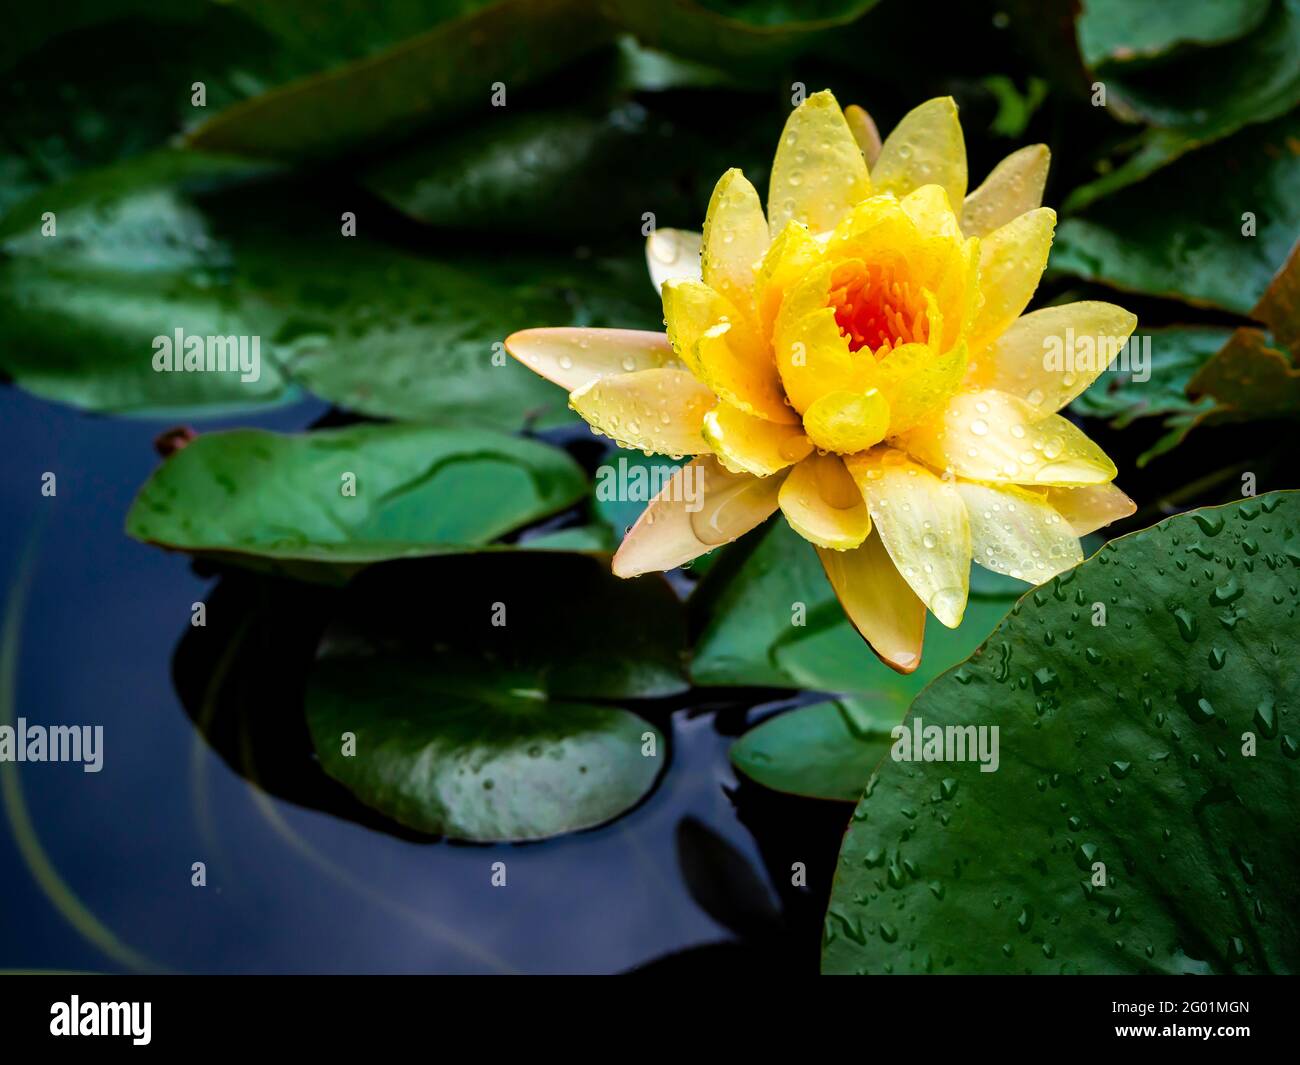 Hermosa flor de lirio de agua amarilla o flor de loto cubierto con muchas  gotas de agua después de llover en hojas verdes de loto y. superficie de  agua azul intenso bac